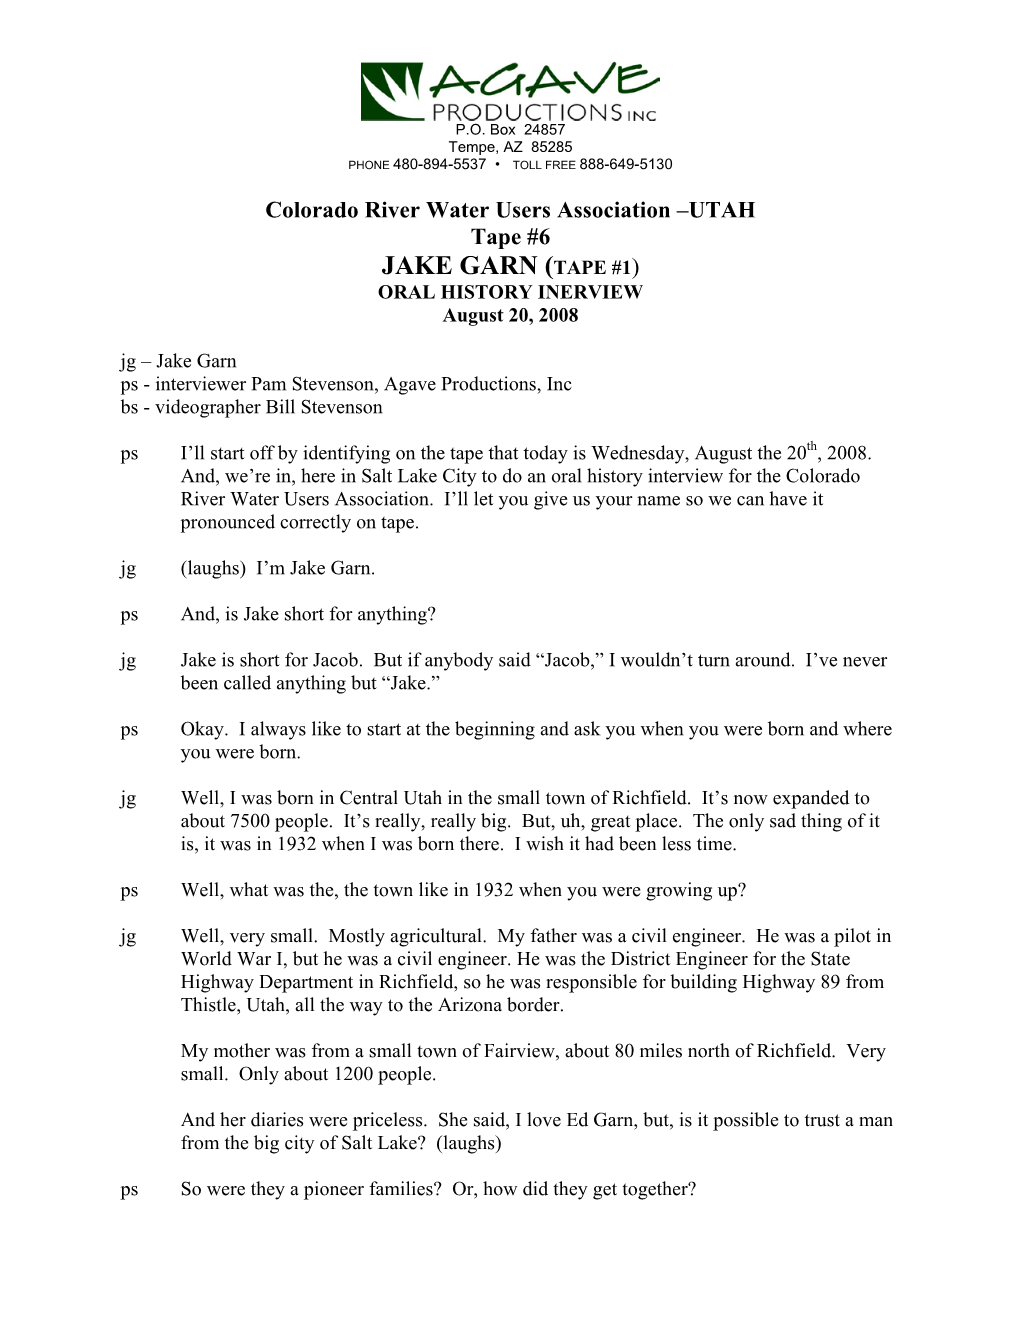 UTAH Tape #6 JAKE GARN (TAPE #1) ORAL HISTORY INERVIEW August 20, 2008